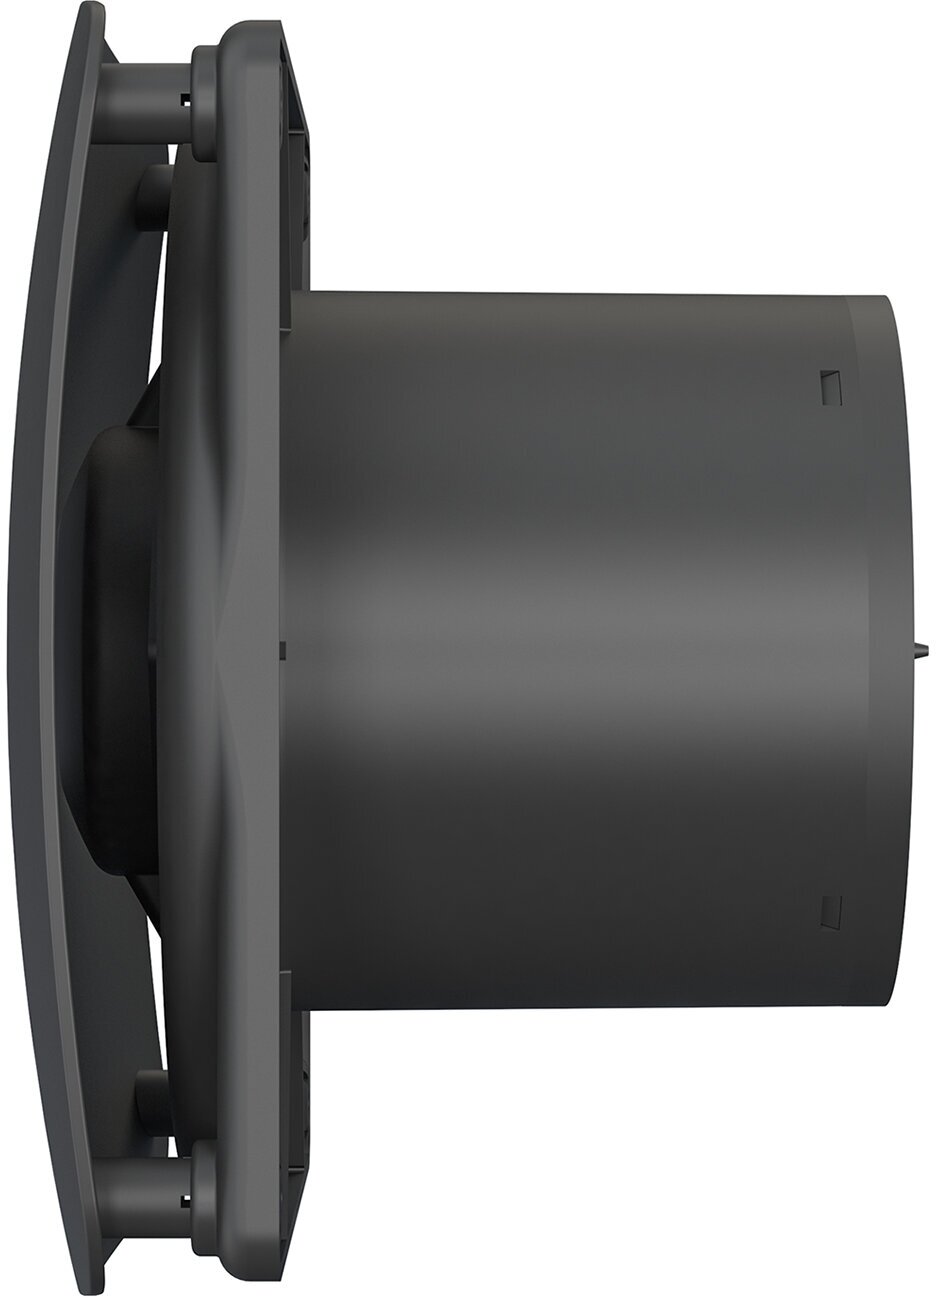 Вентилятор вытяжной осевой DICITI RIO 5C Matt black, с обратным клапаном, с двигателем на шарикоподшипниках, D 125 мм, черный матовый